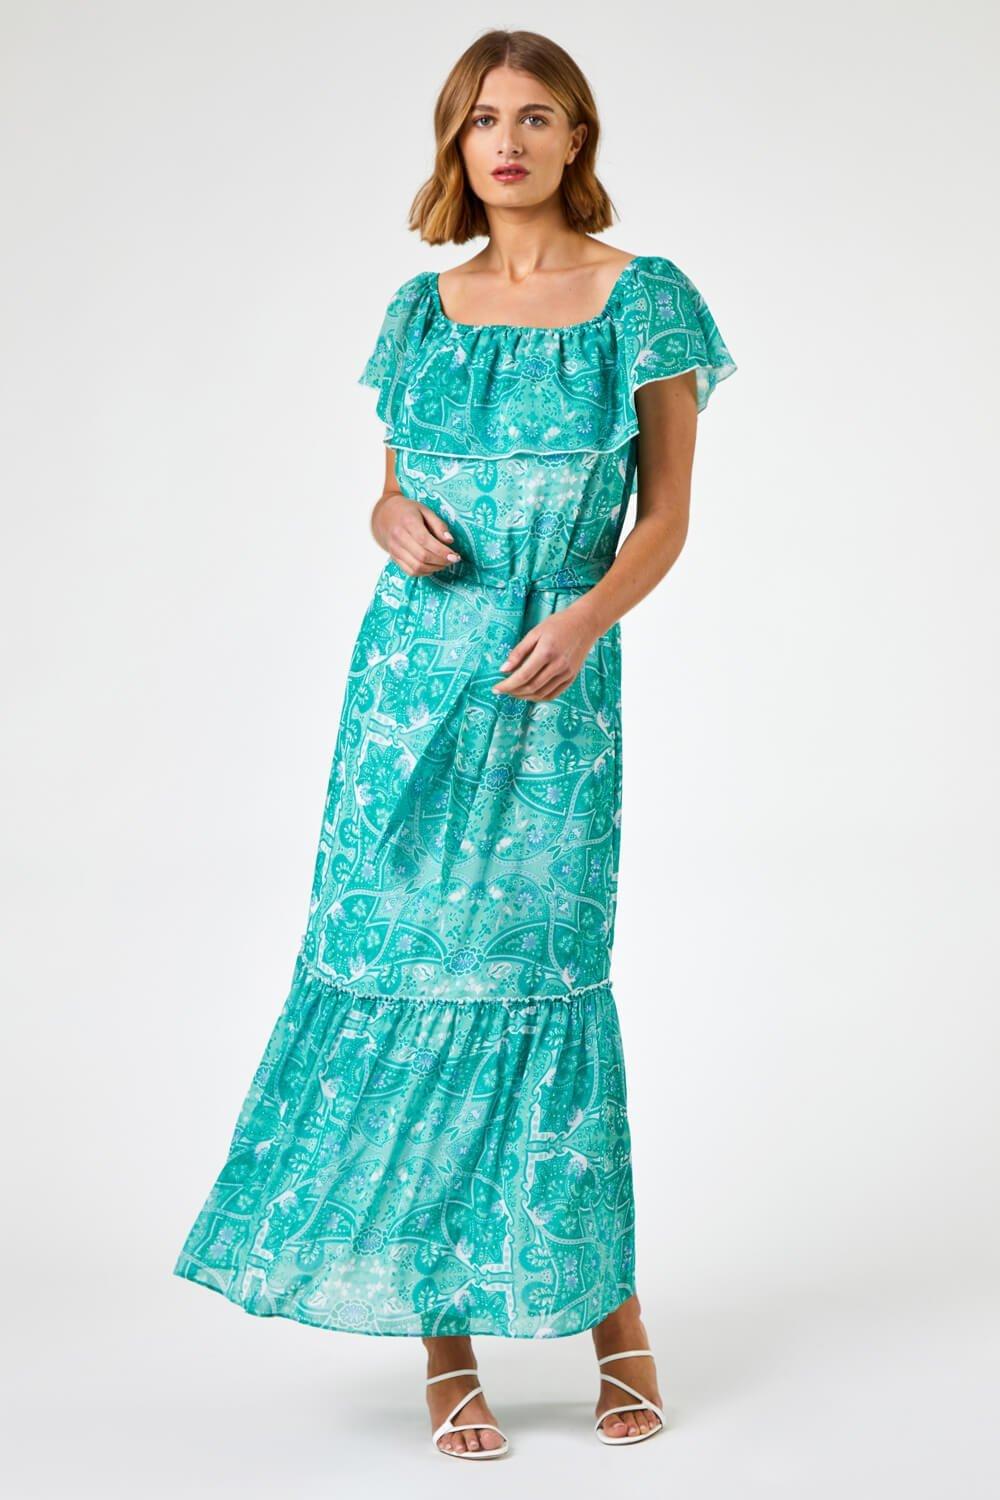 Многоярусное платье макси с принтом пейсли Roman, зеленый